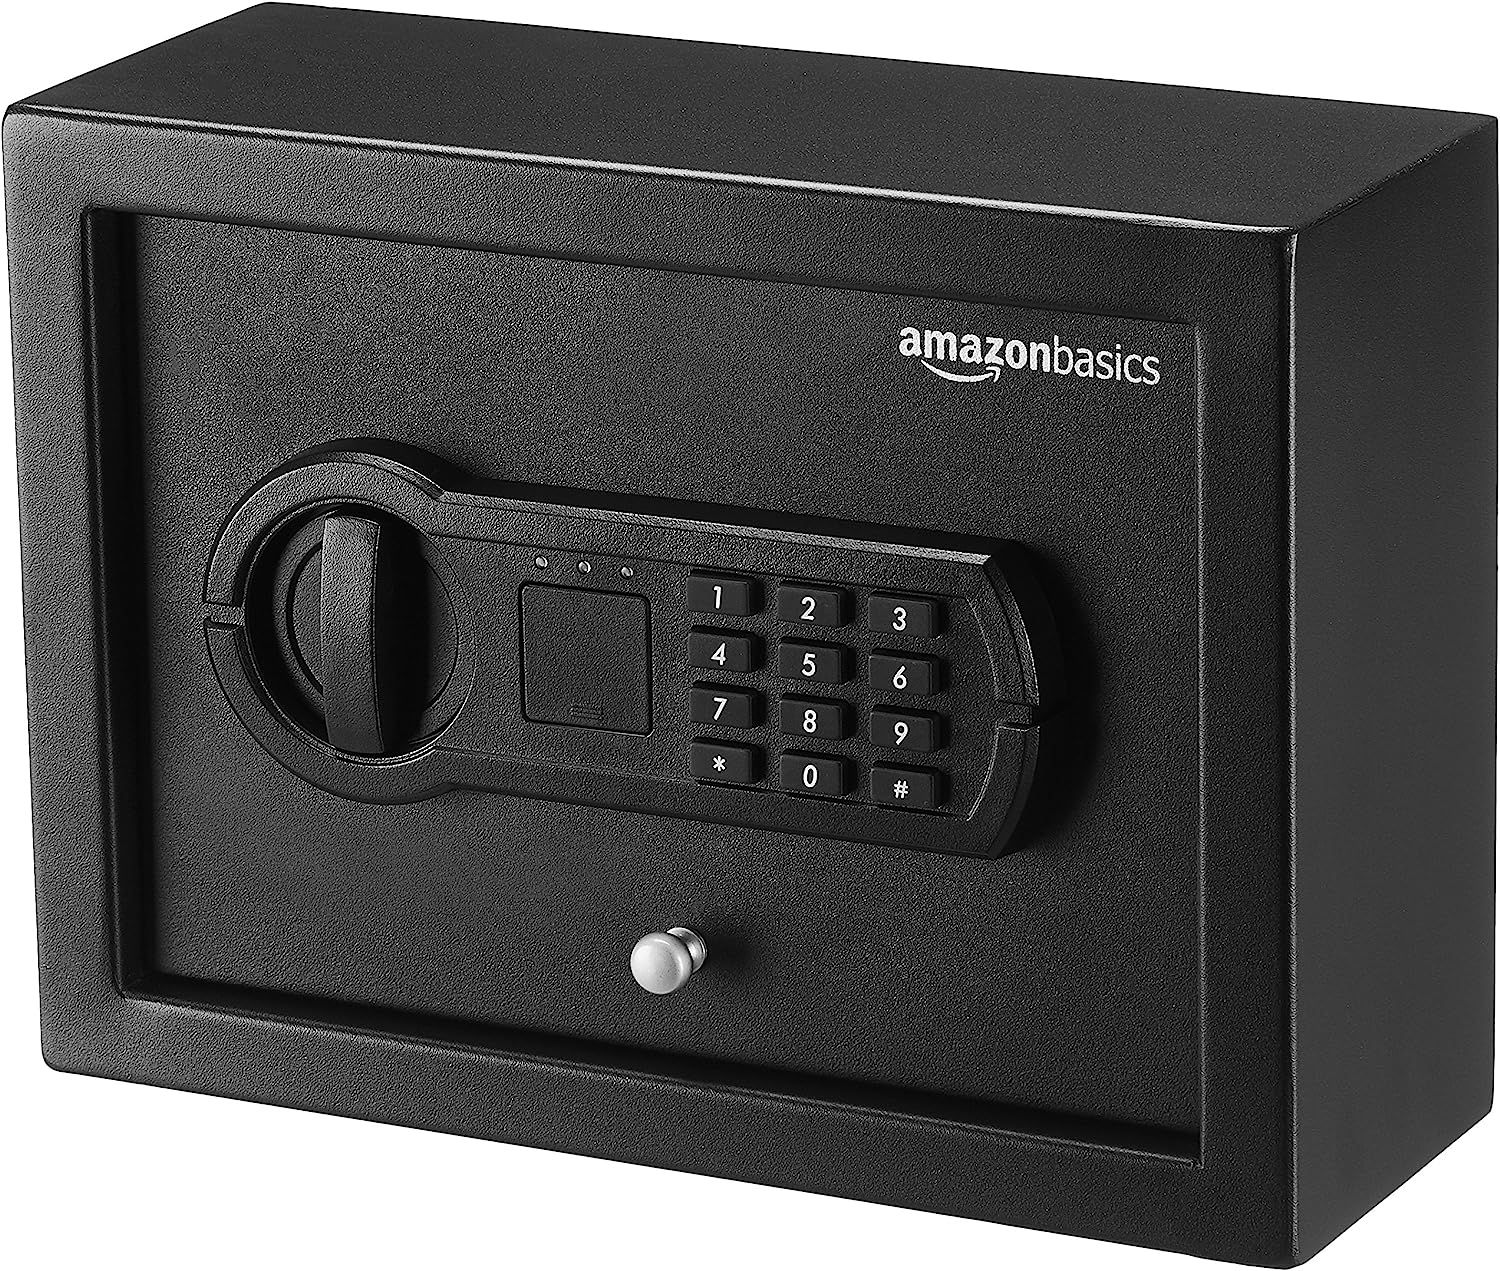 Amazon Basics Drawer Safe